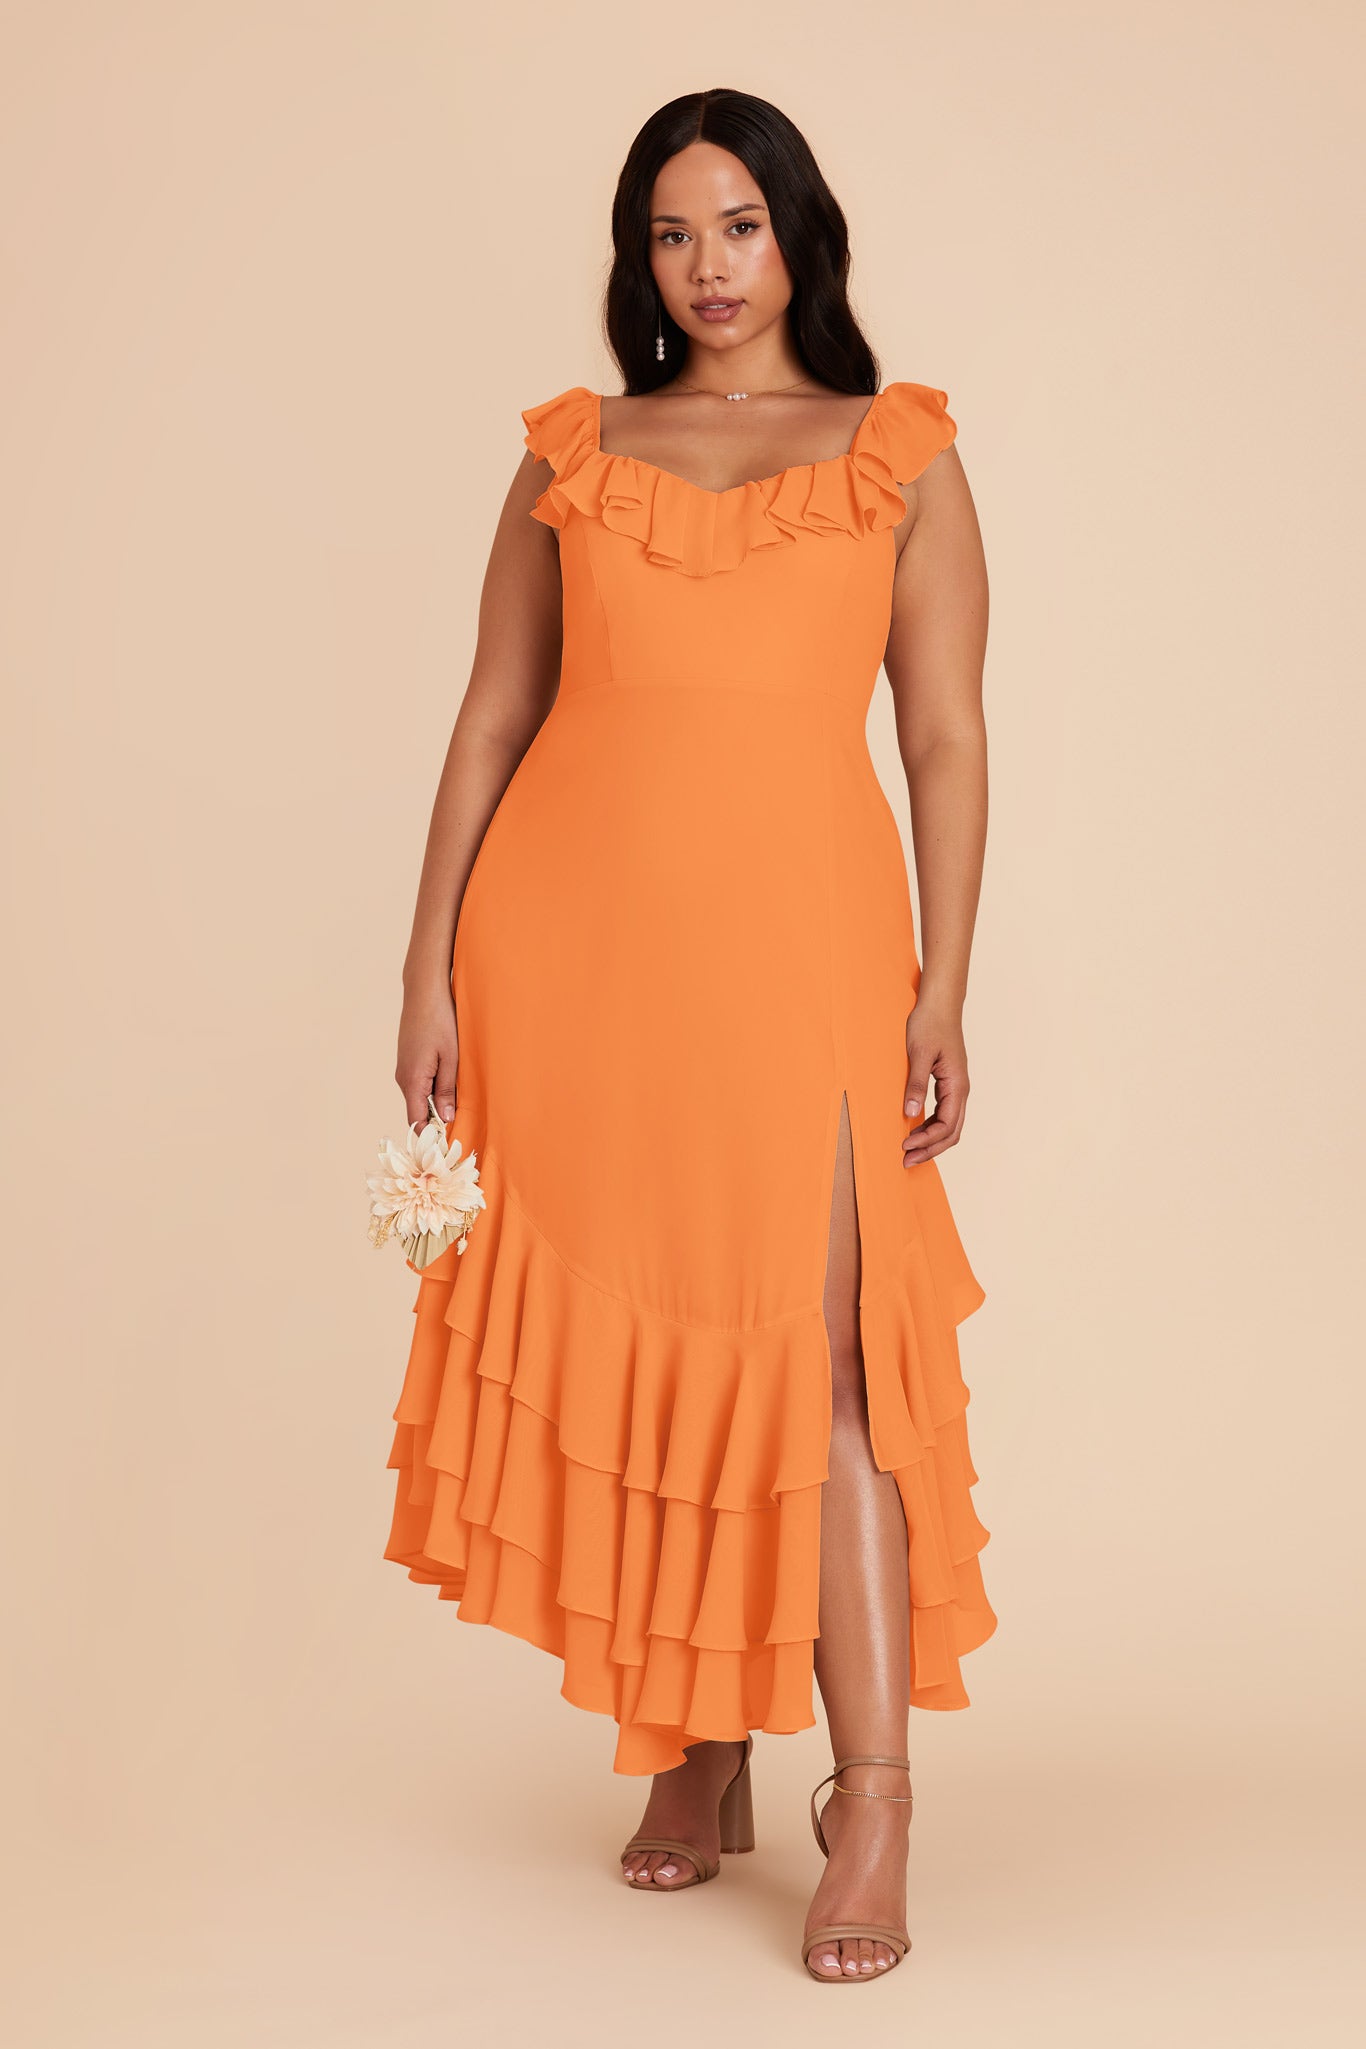 Apricot Ginny Chiffon Dress by Birdy Grey